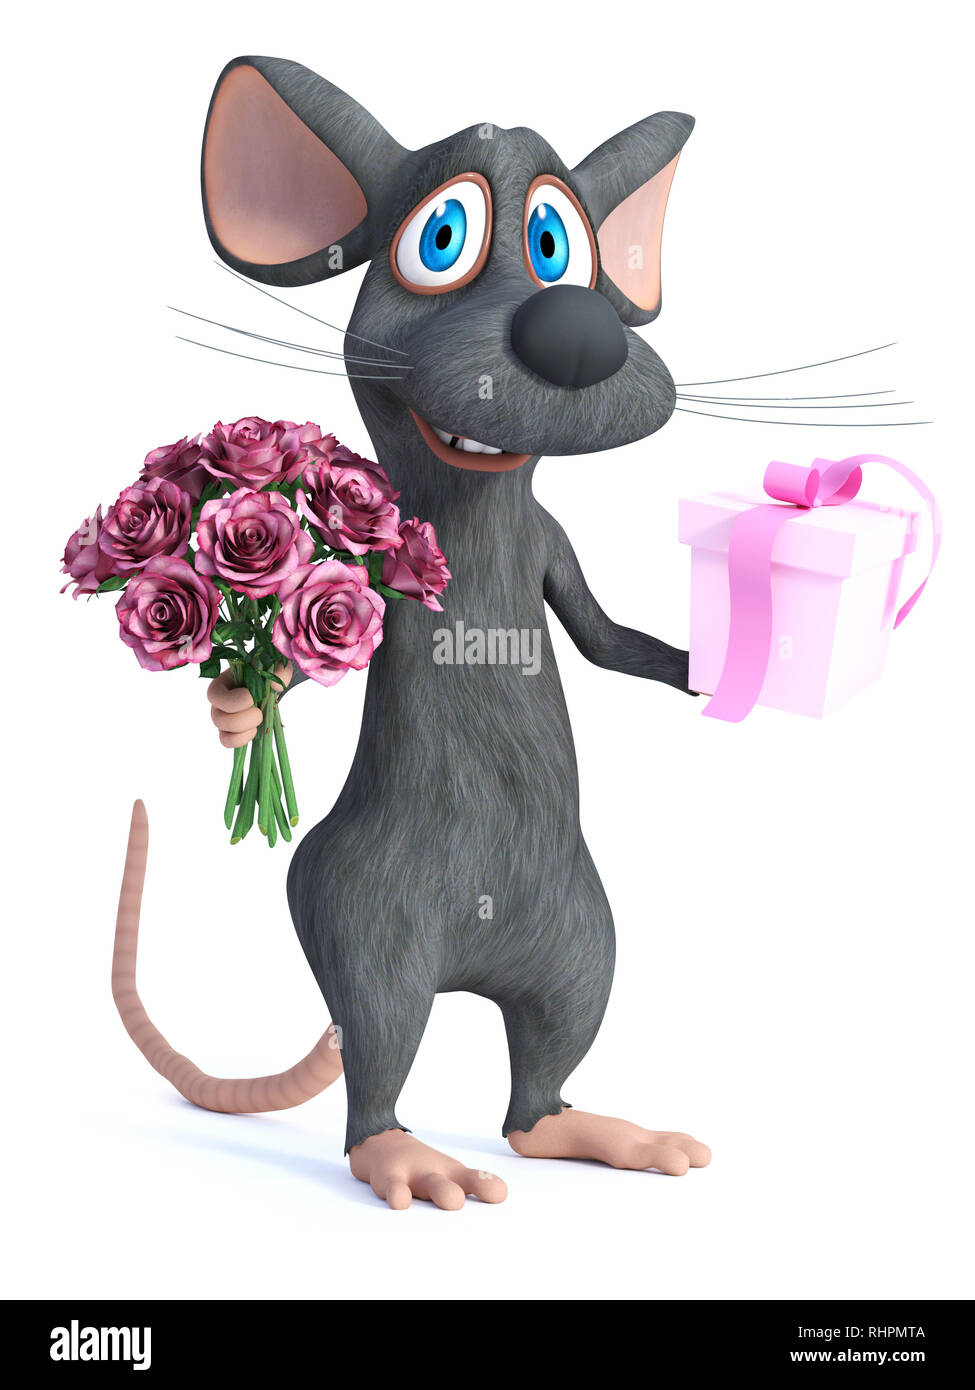 Le rendu 3D d'un sourire mignon cartoon souris tenant un bouquet de roses roses dans une main et un cadeau dans l'autre. Il est prêt pour une saint Valentin romantique Banque D'Images